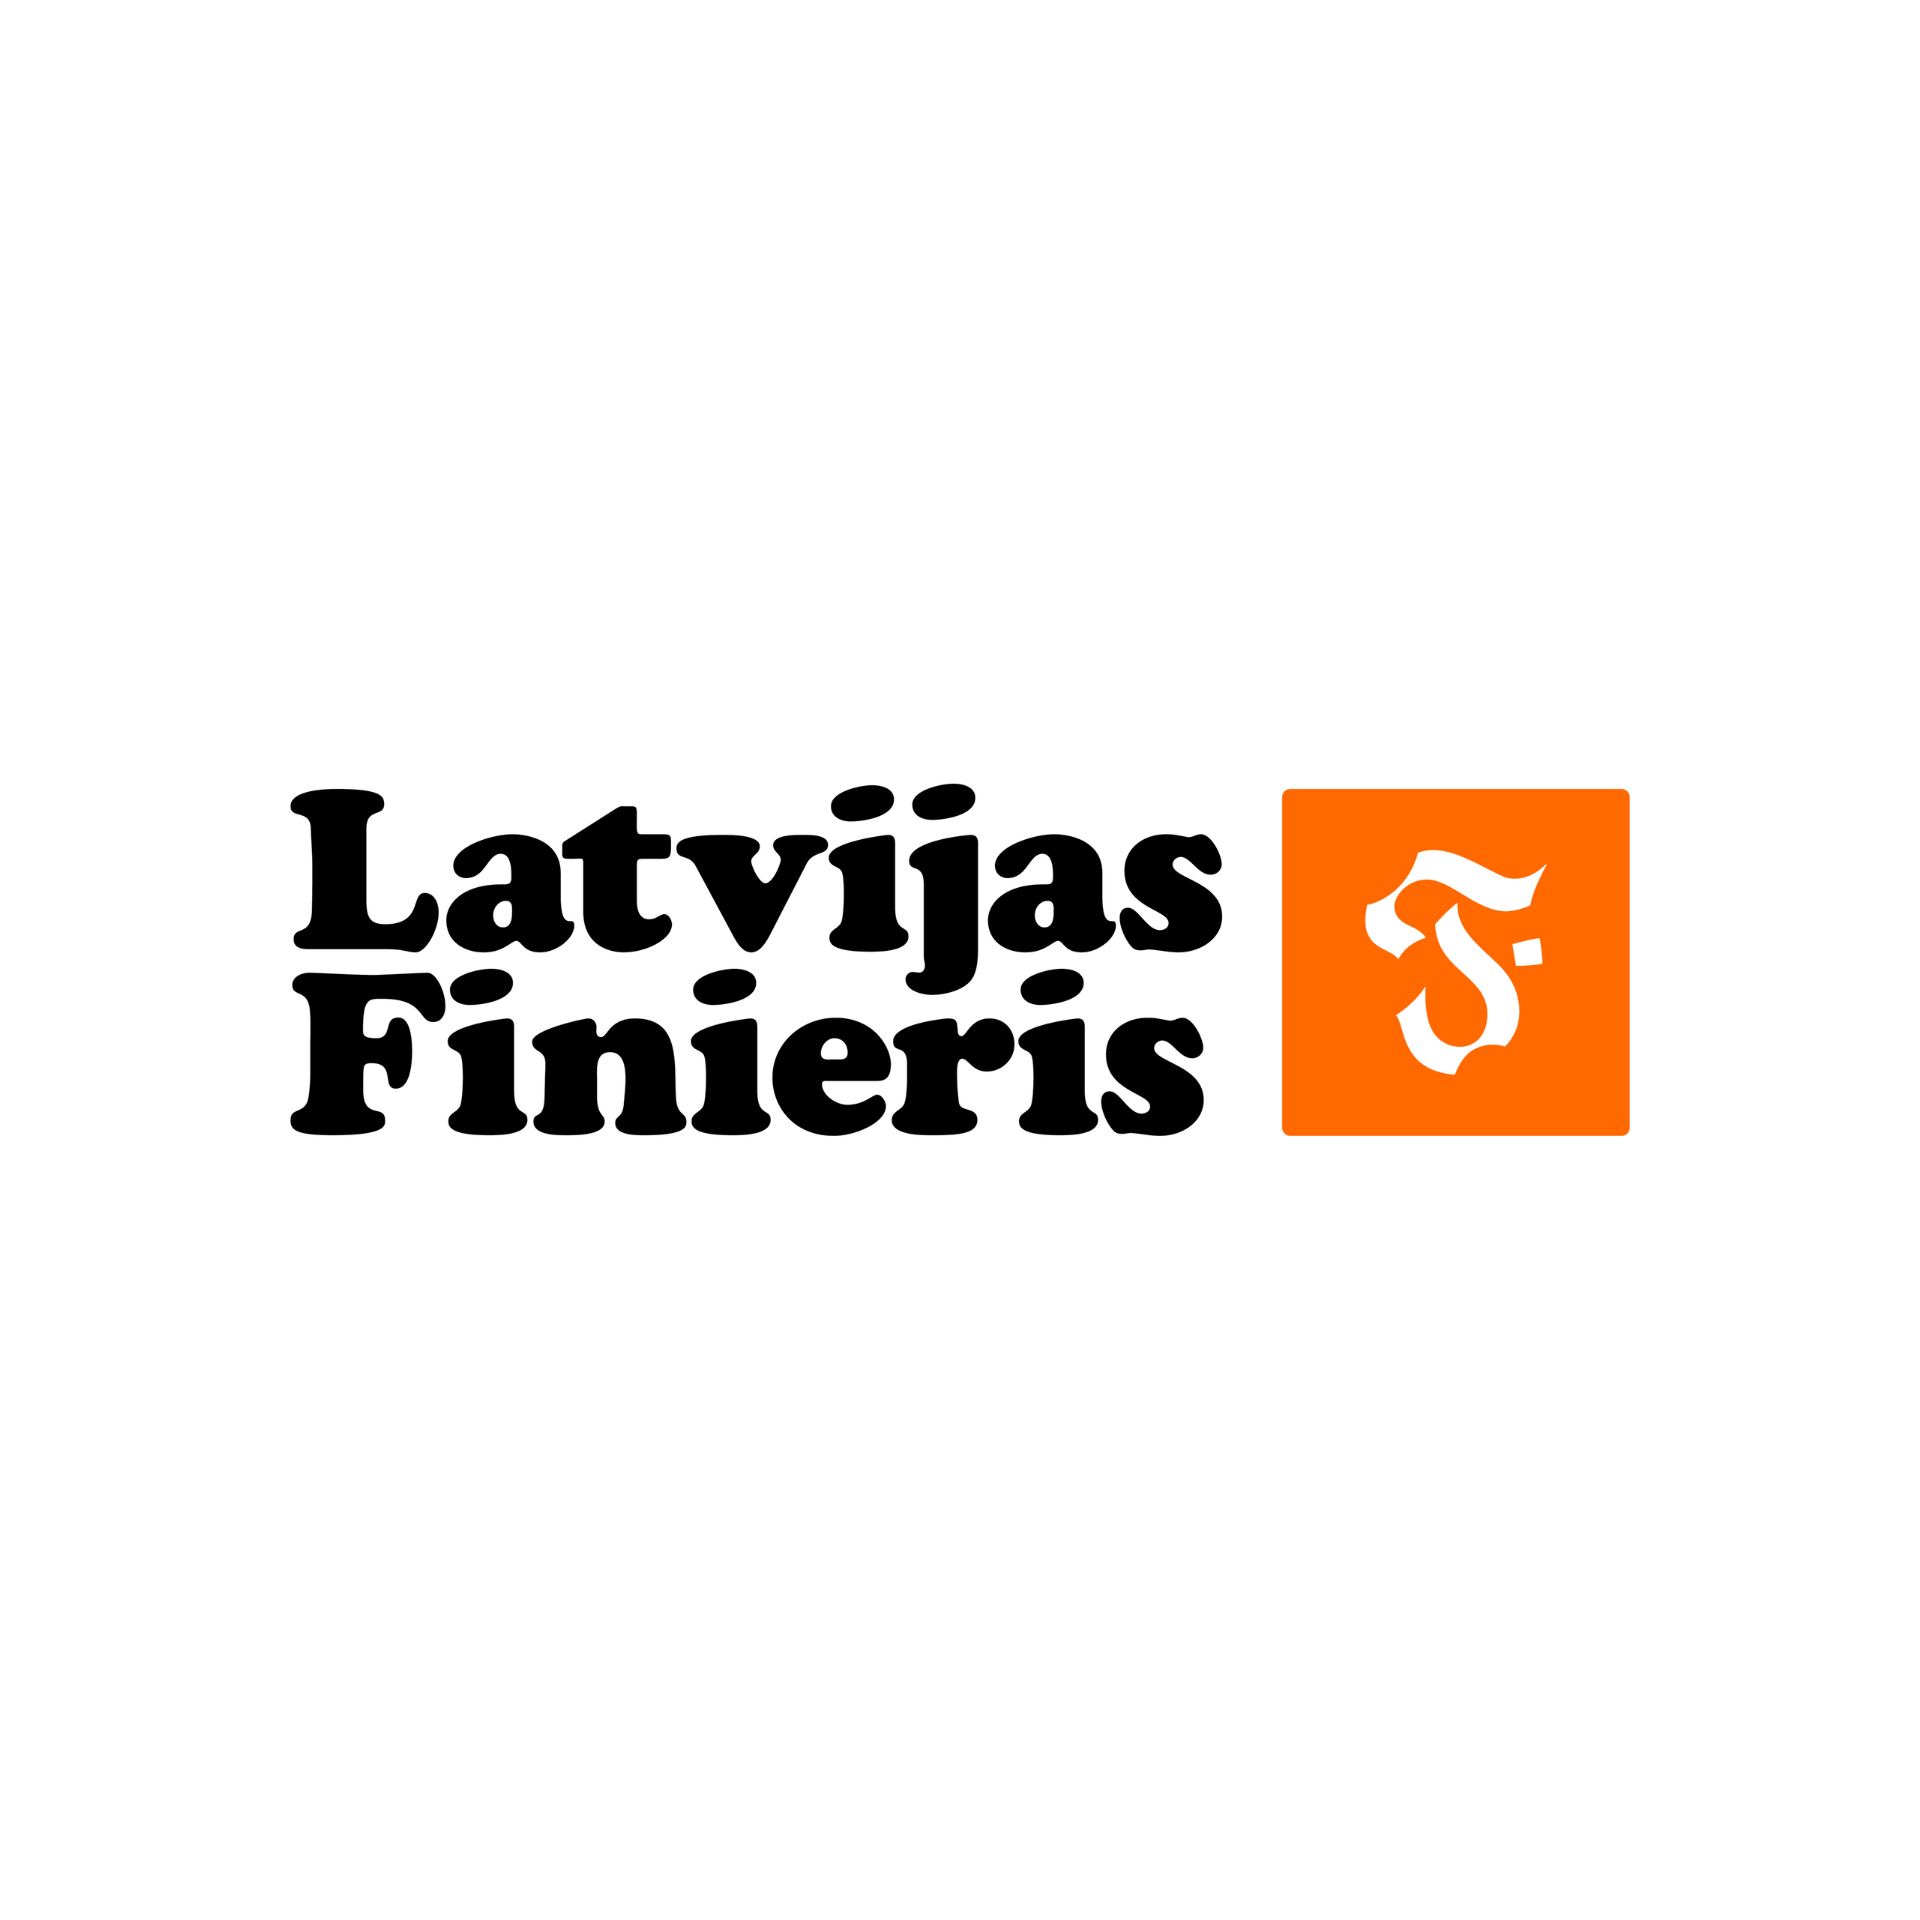 Latvijas Finieris